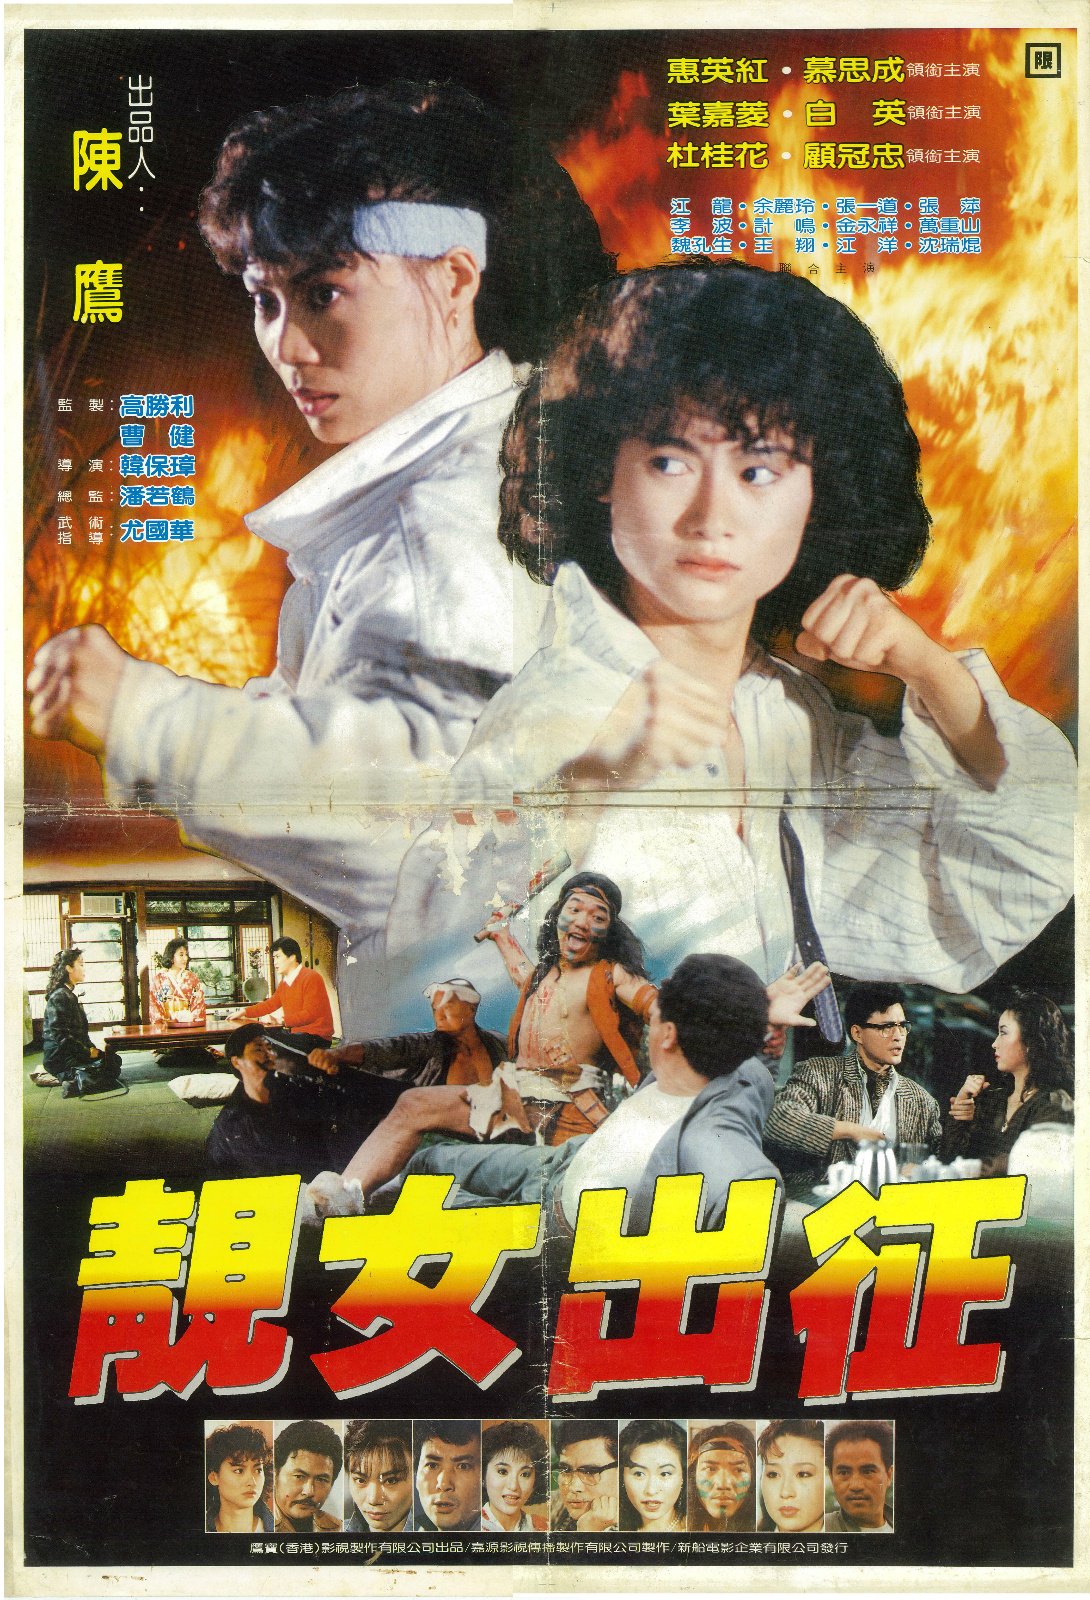 Jing nu chu zheng (1988) Screenshot 2